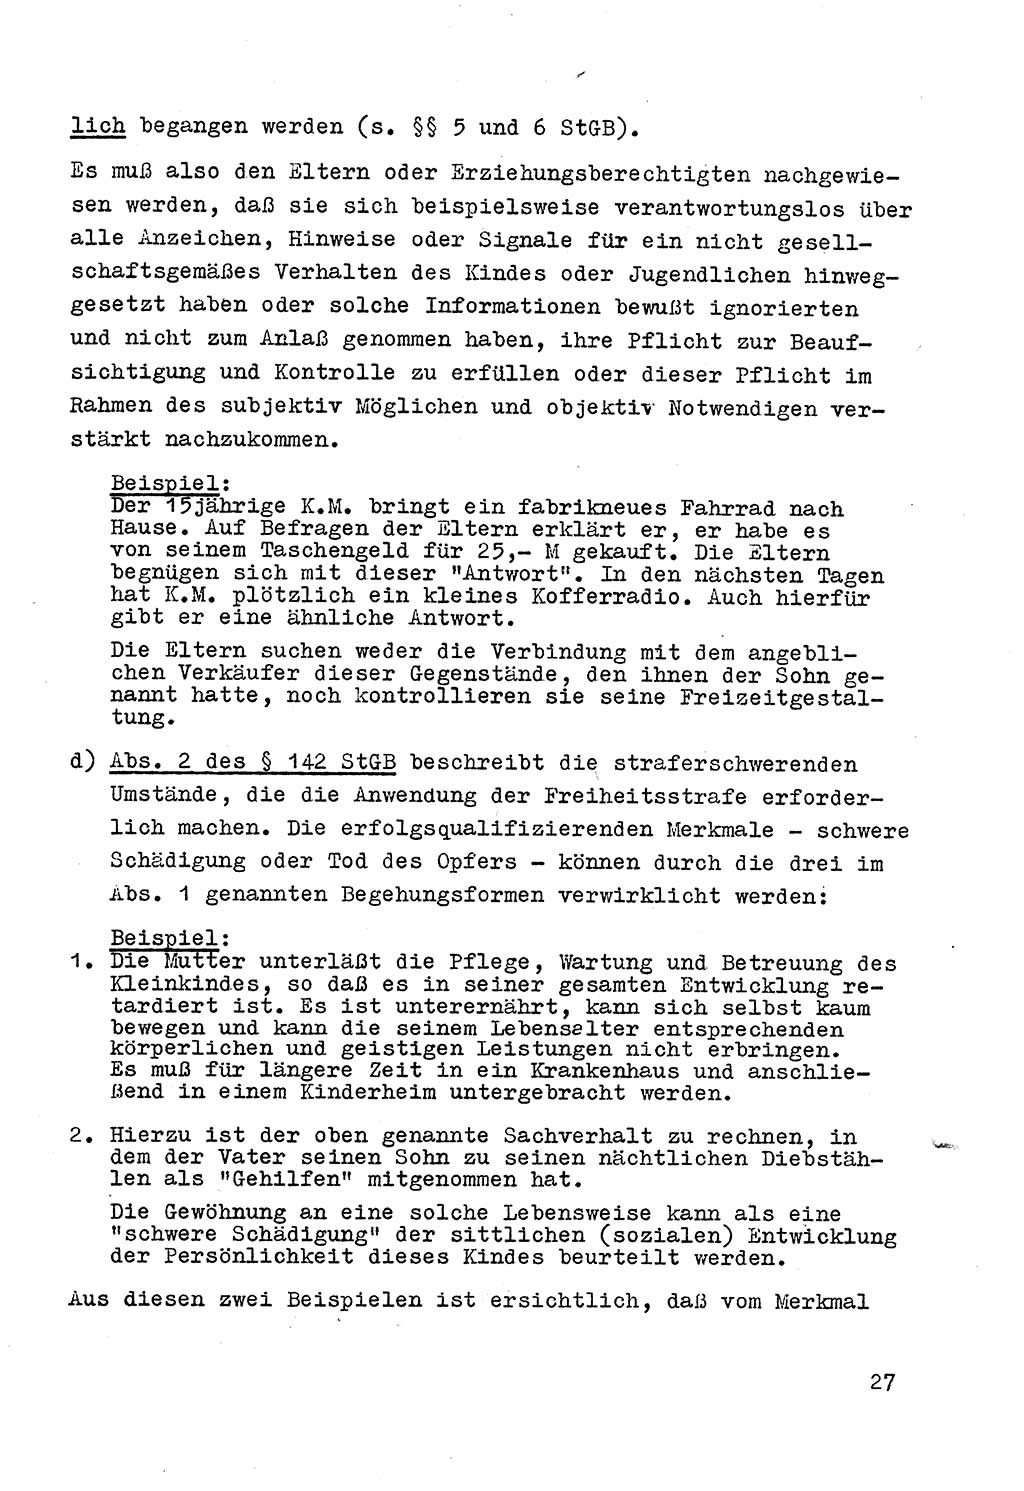 Strafrecht der DDR (Deutsche Demokratische Republik), Besonderer Teil, Lehrmaterial, Heft 4 1969, Seite 27 (Strafr. DDR BT Lehrmat. H. 4 1969, S. 27)